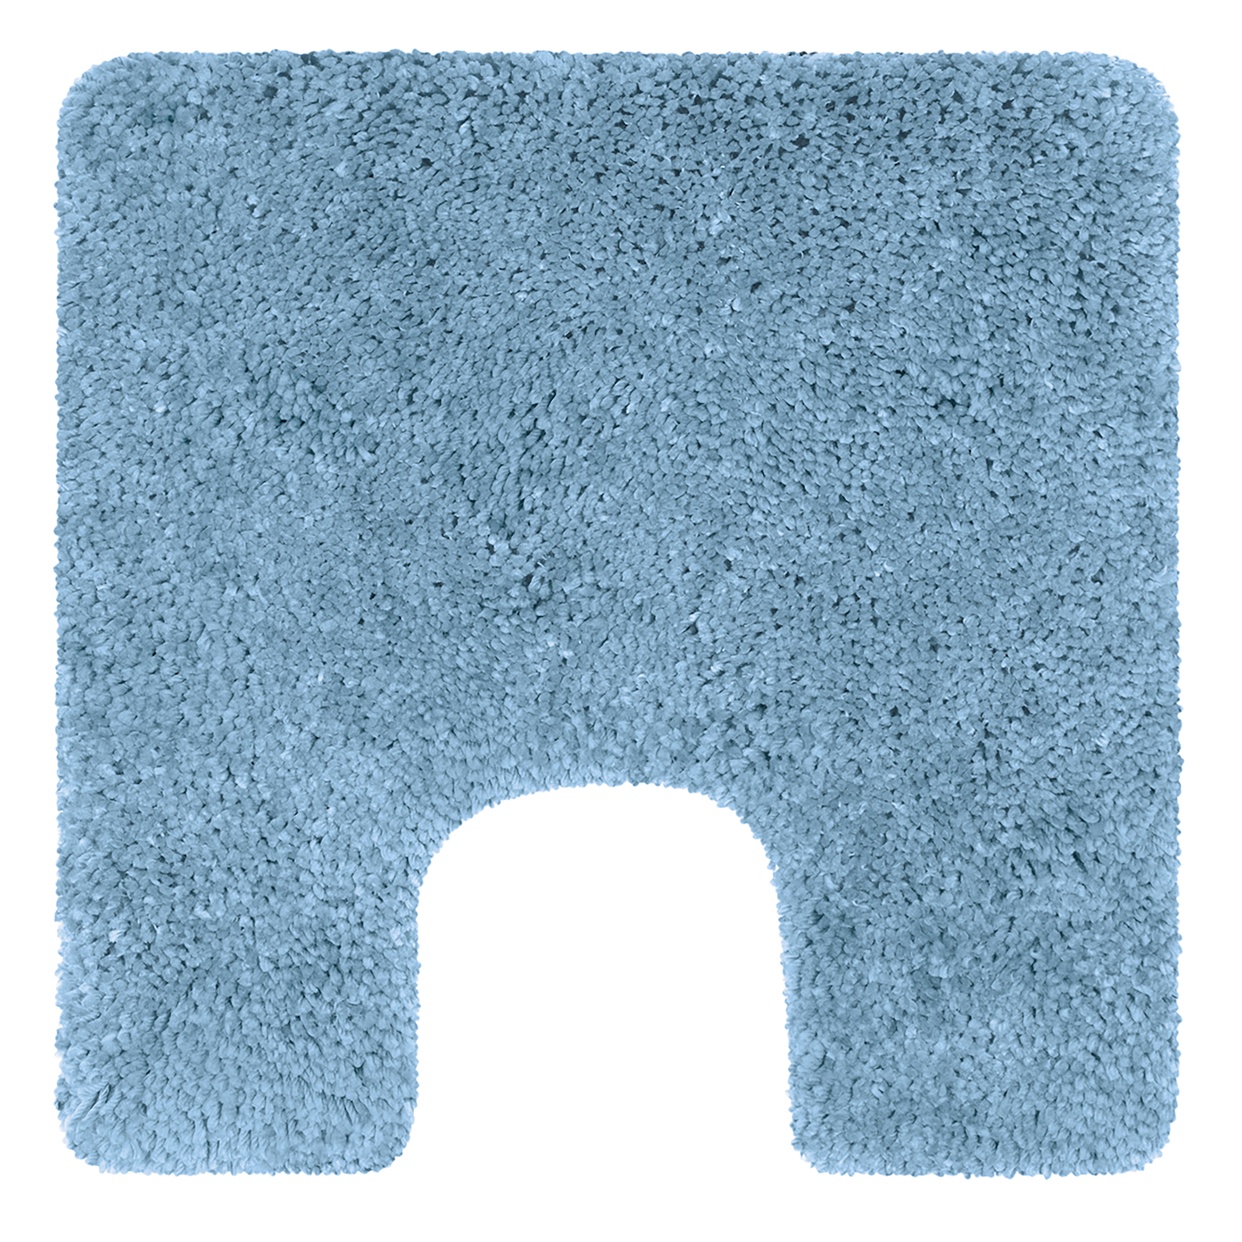 Коврик для туалета Highland голубой, 55 x 55 см (Spirella 1013079)